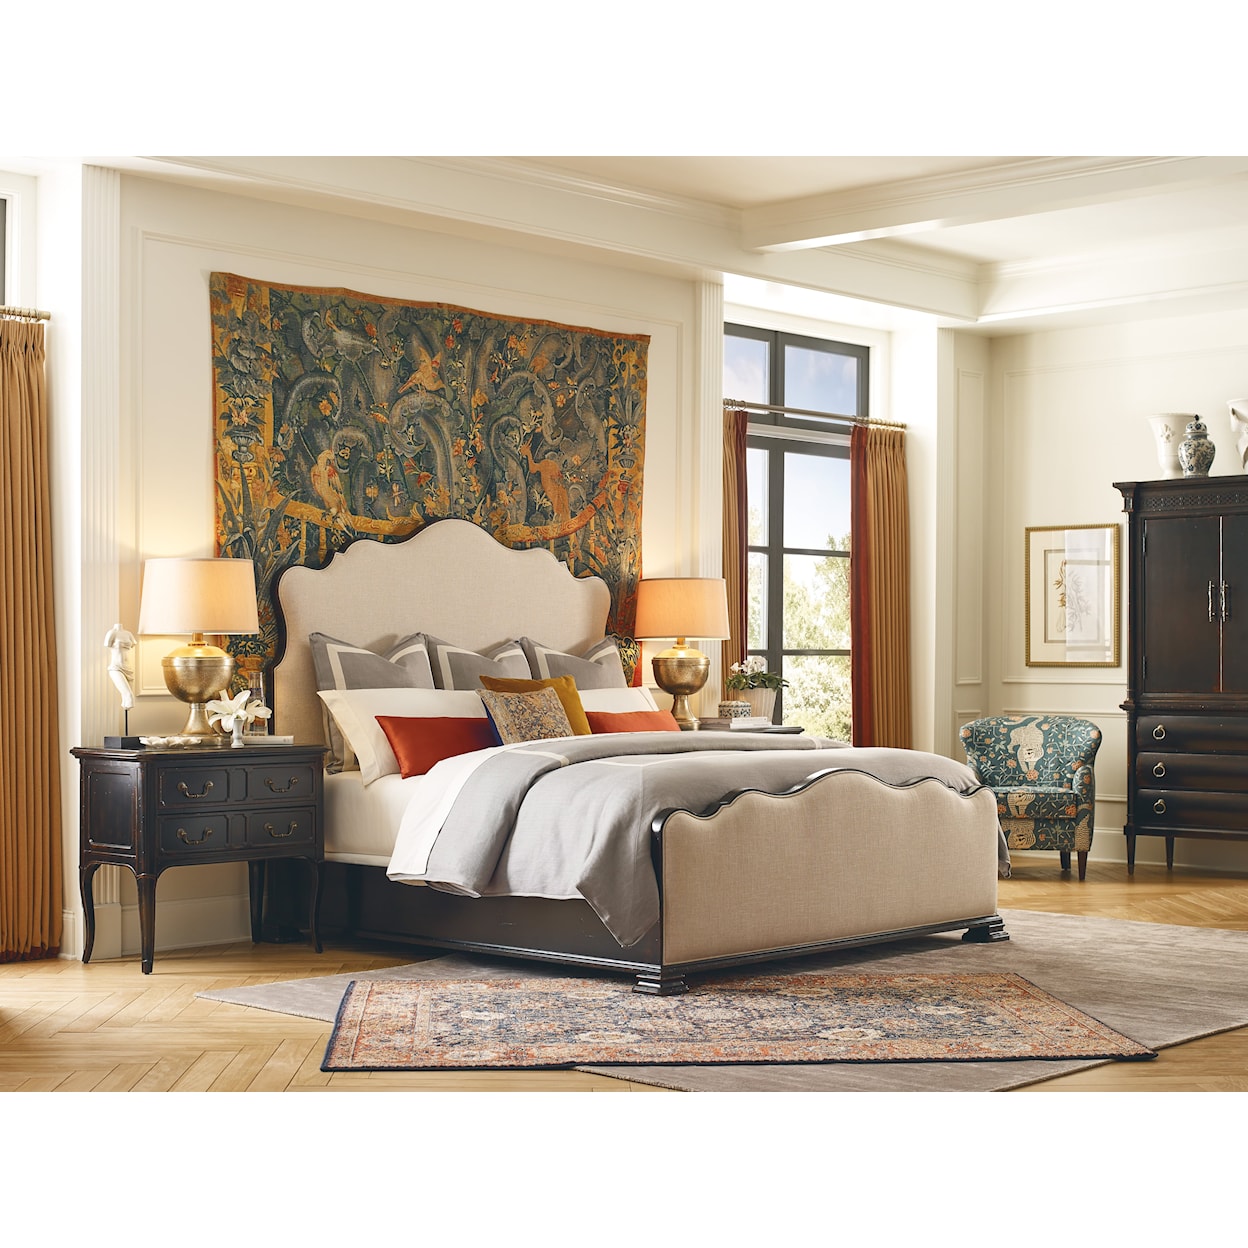 Hooker Furniture Charleston King Upholstered Bed